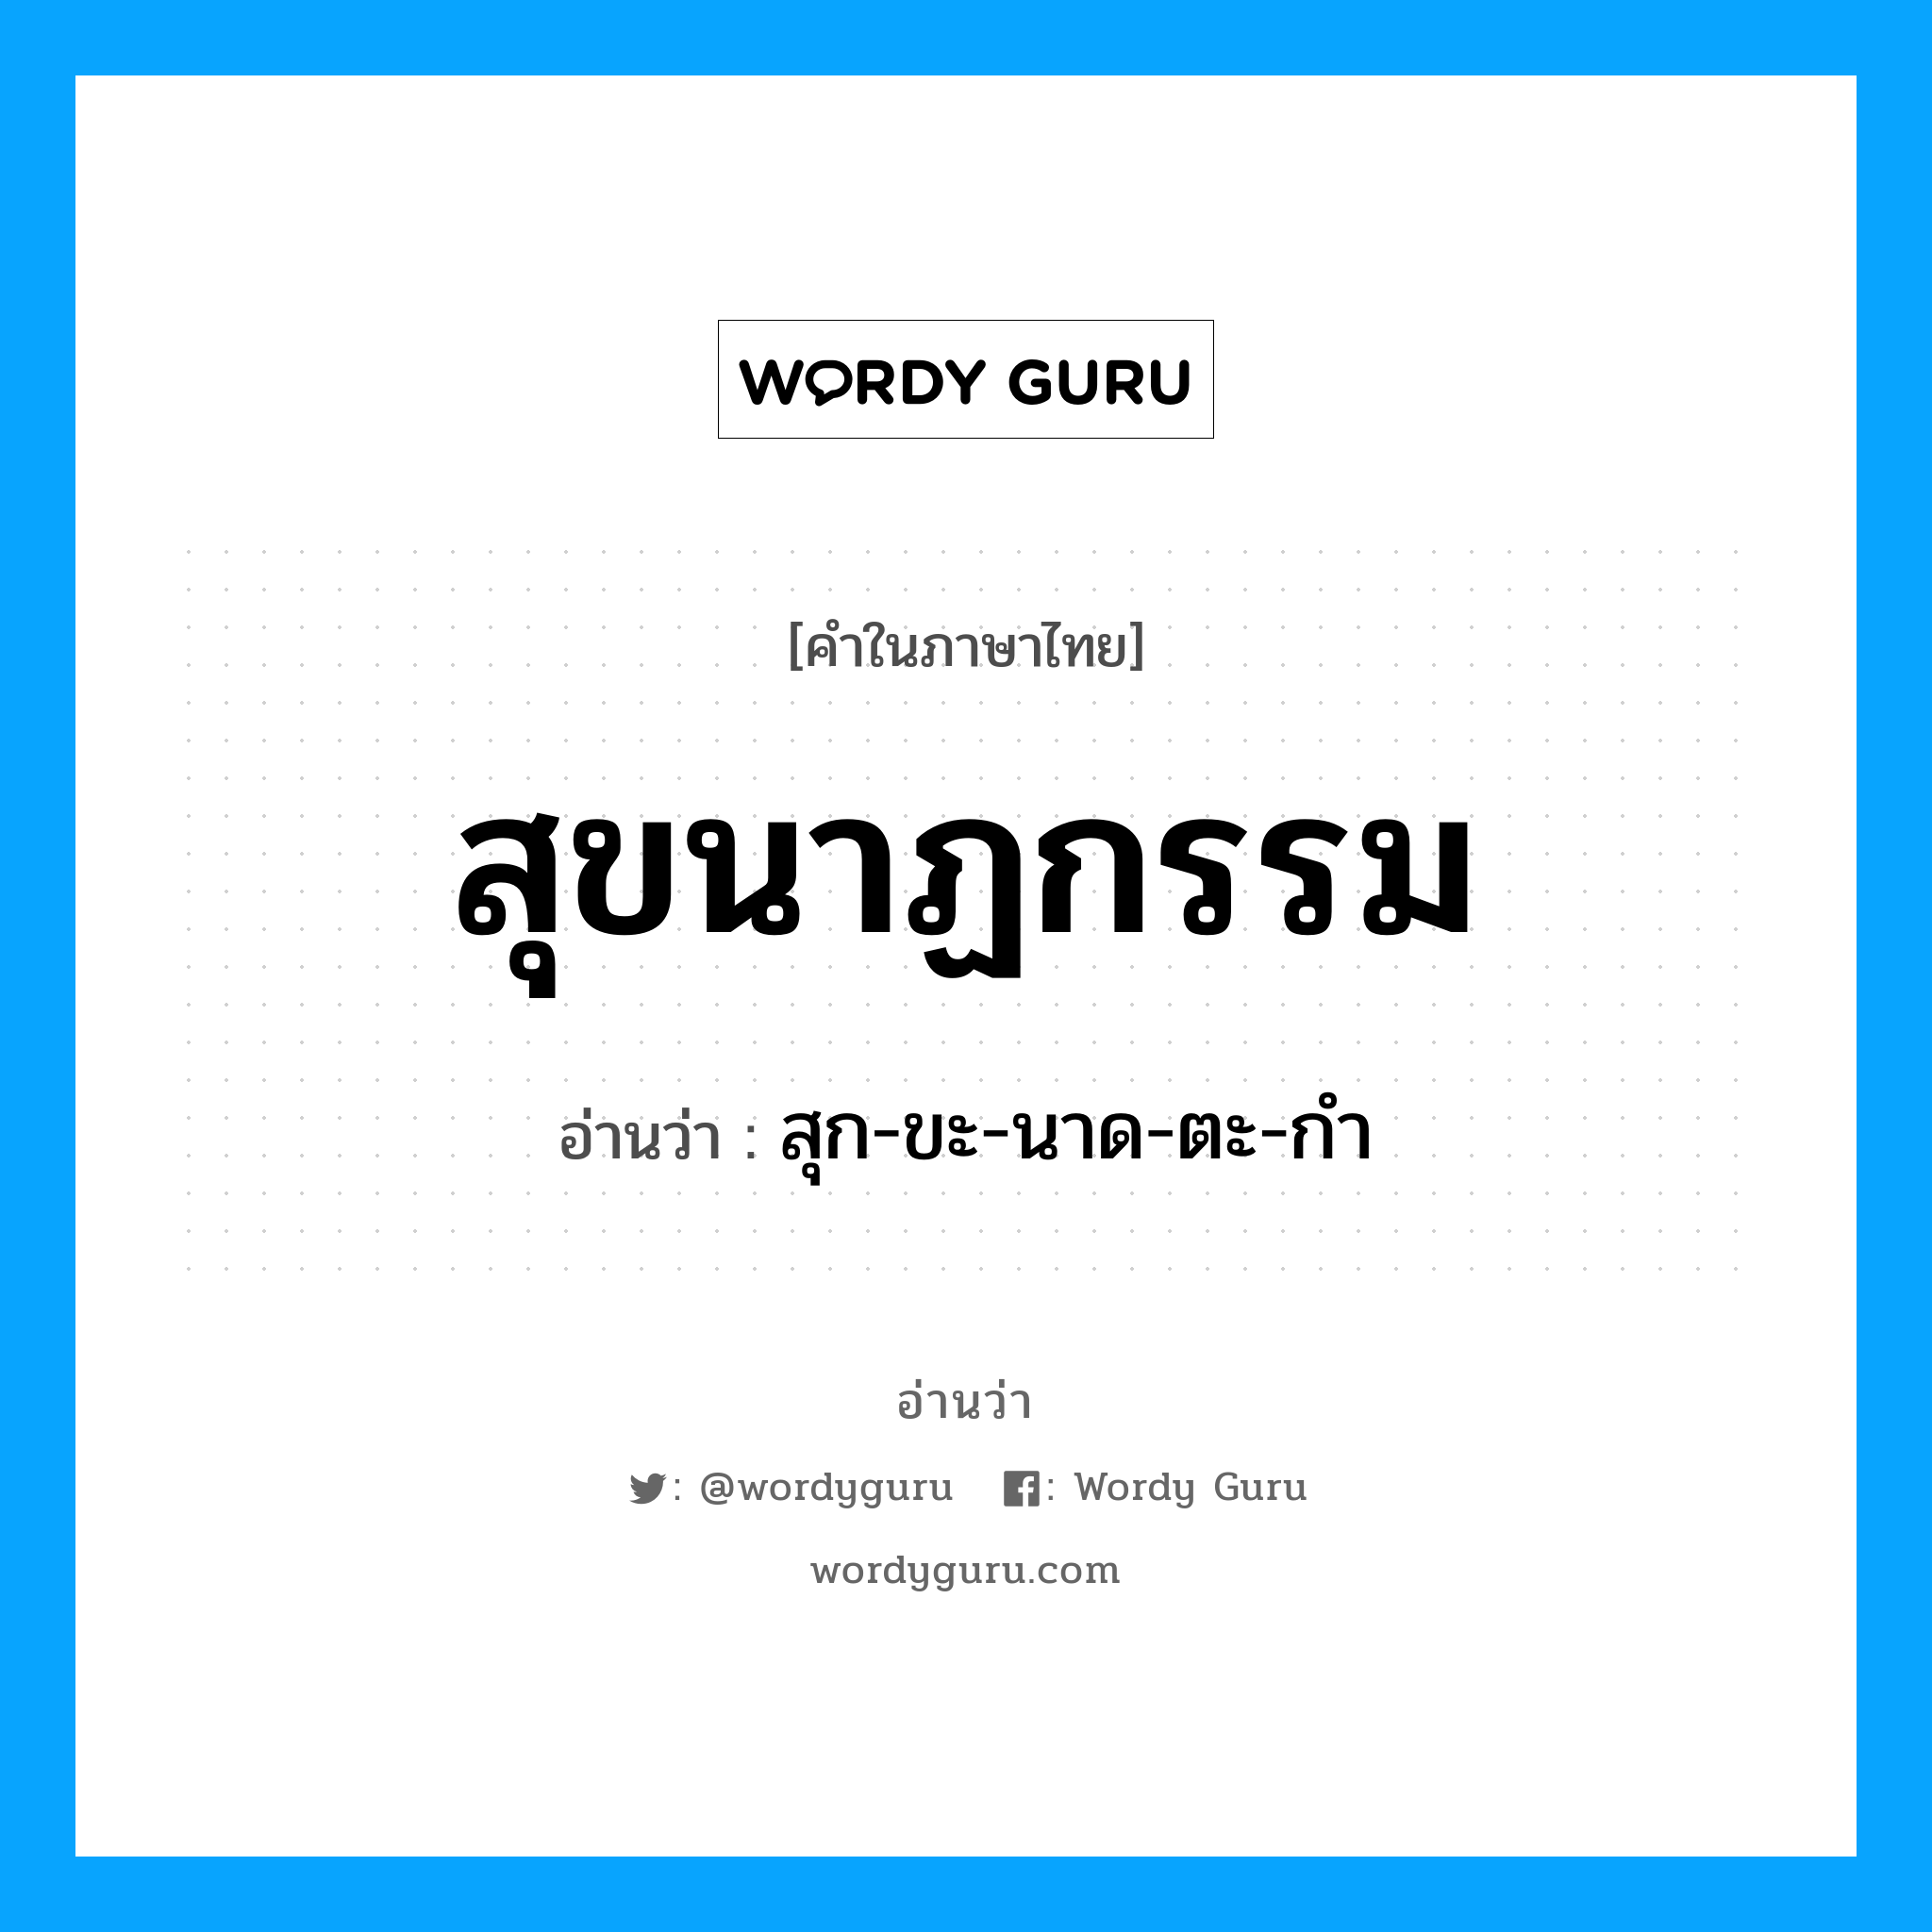 สุก-ขะ-นาด-ตะ-กำ เป็นคำอ่านของคำไหน?, คำในภาษาไทย สุก-ขะ-นาด-ตะ-กำ อ่านว่า สุขนาฏกรรม